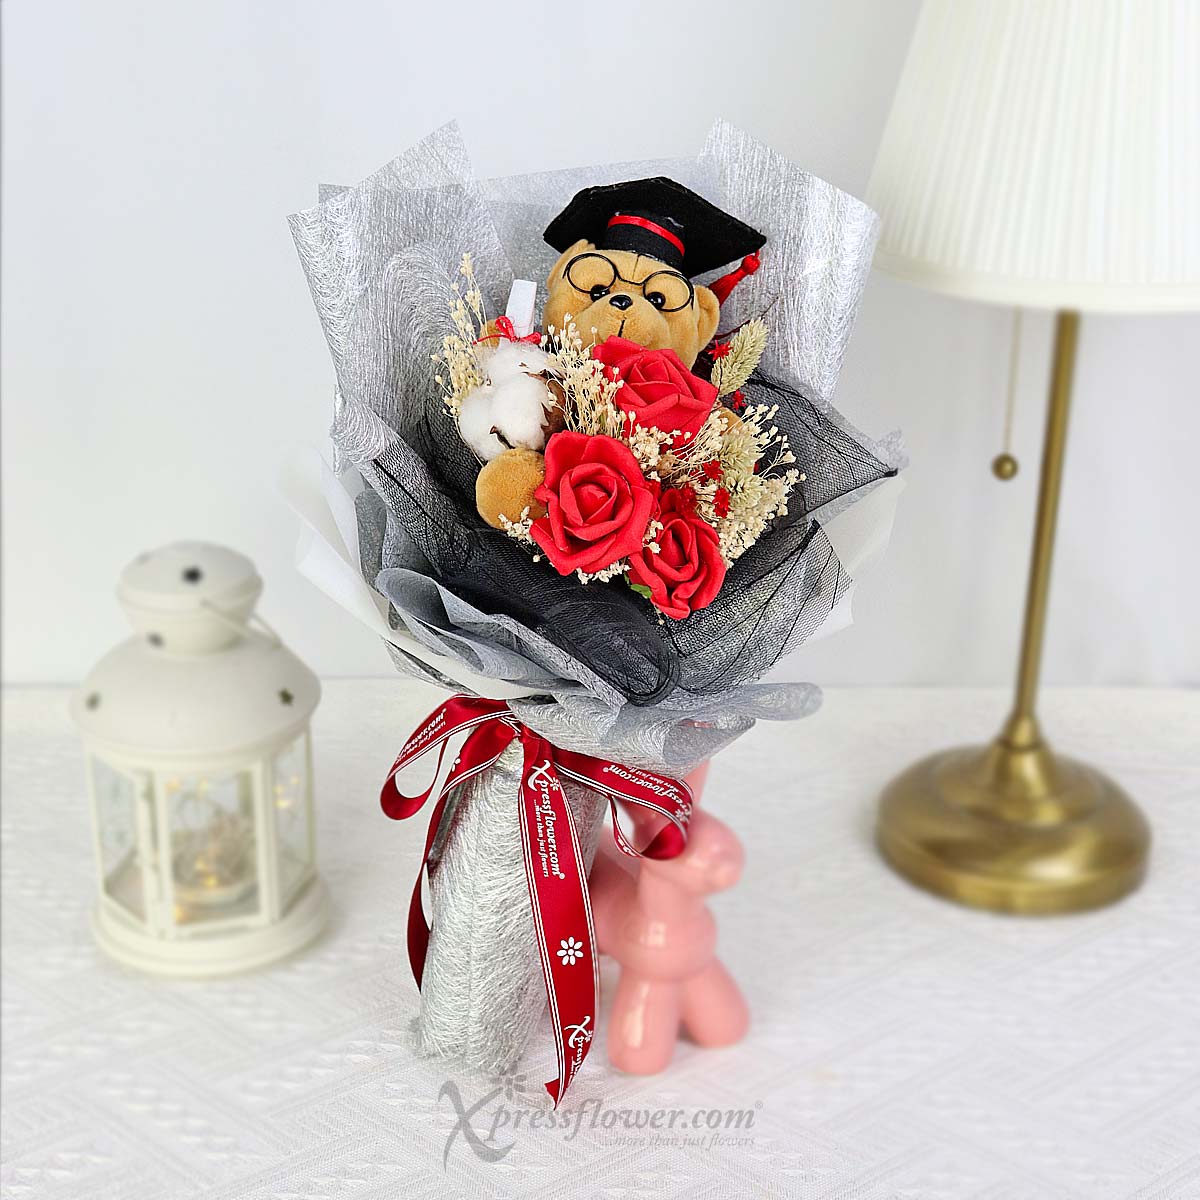 CT2301 Spongeneous Graduate (Sponge Roses with 4.5" Graduation Bear) 3a